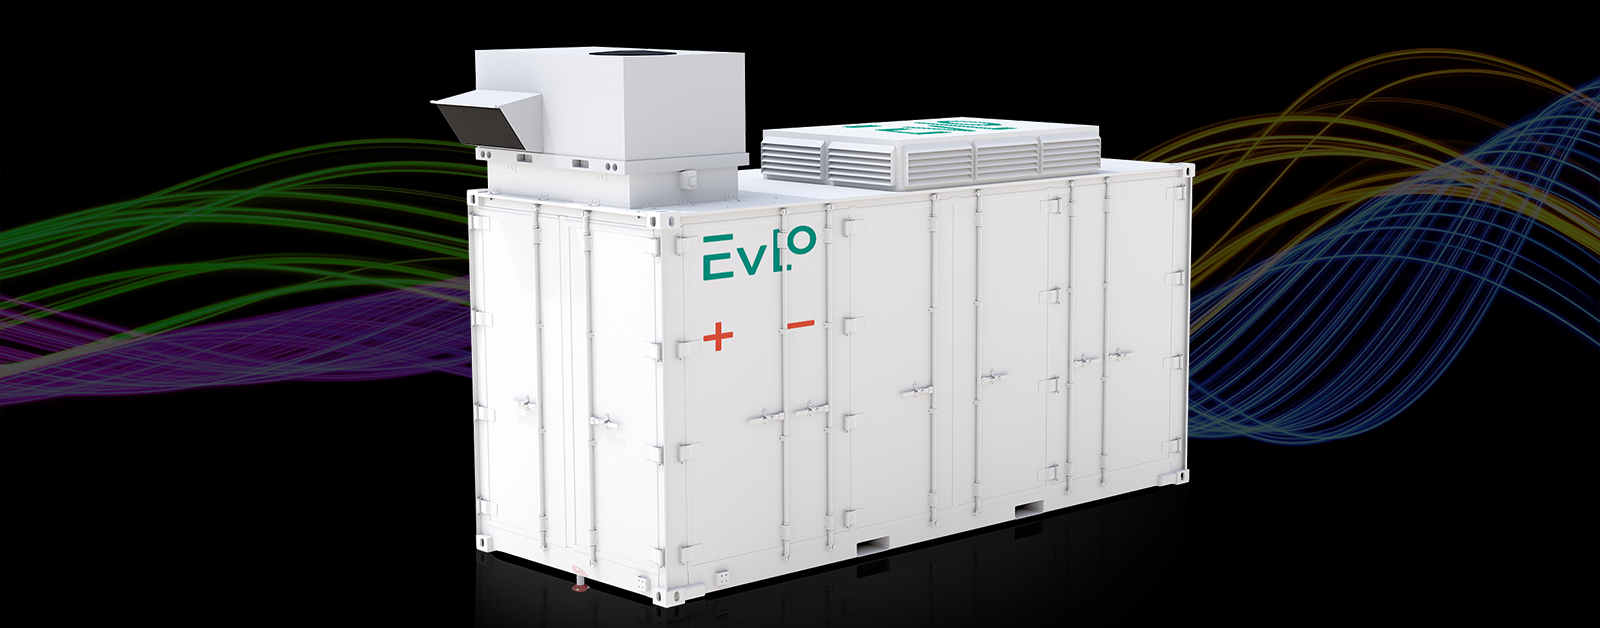 EVLOFLEX Energy storage